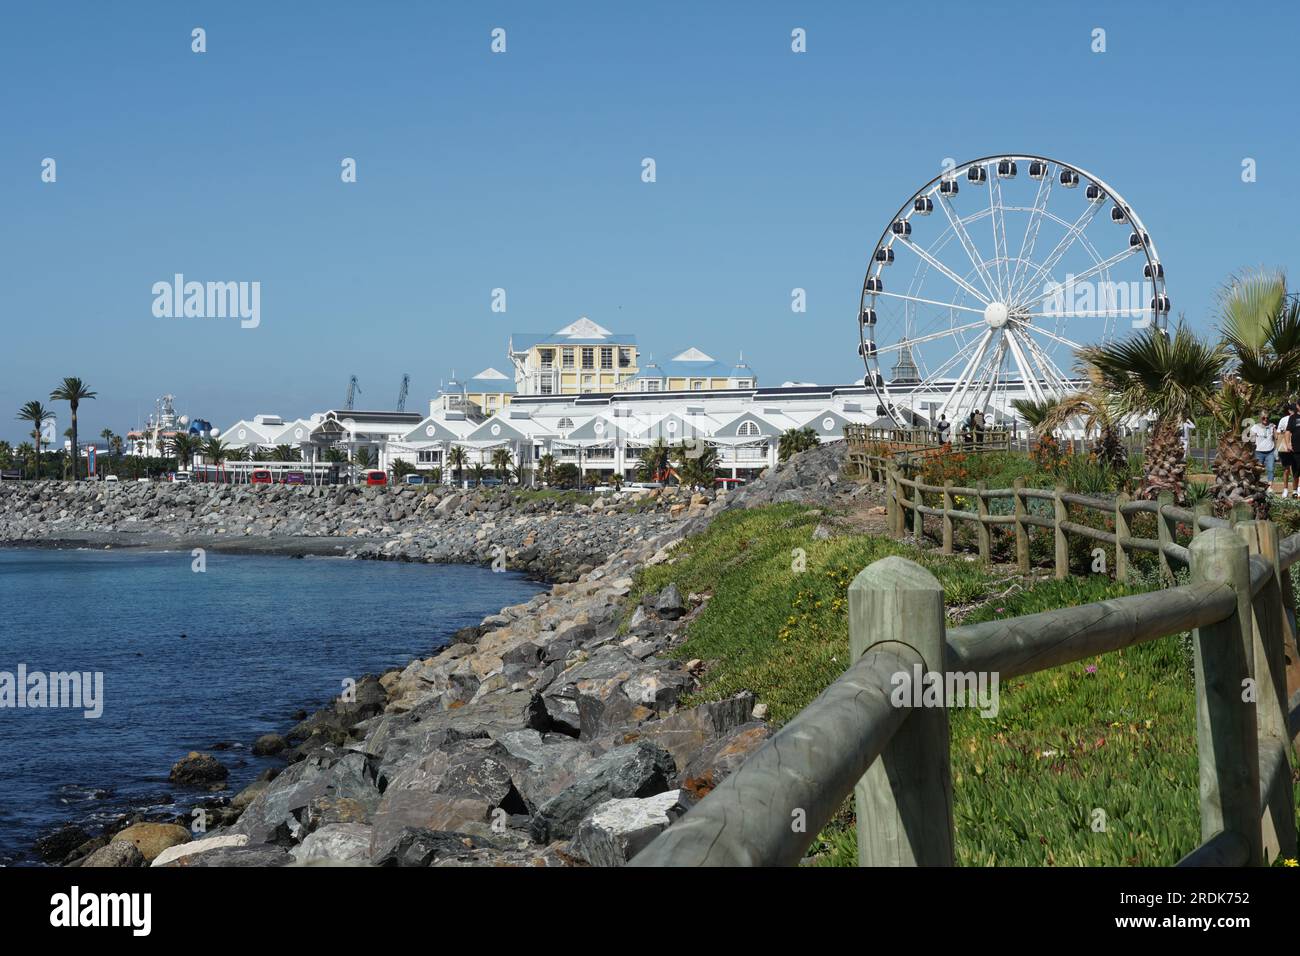 Vivace quartiere Waterfront a città del Capo dietro una romantica baia blu con spiaggia di pietra. Foto Stock